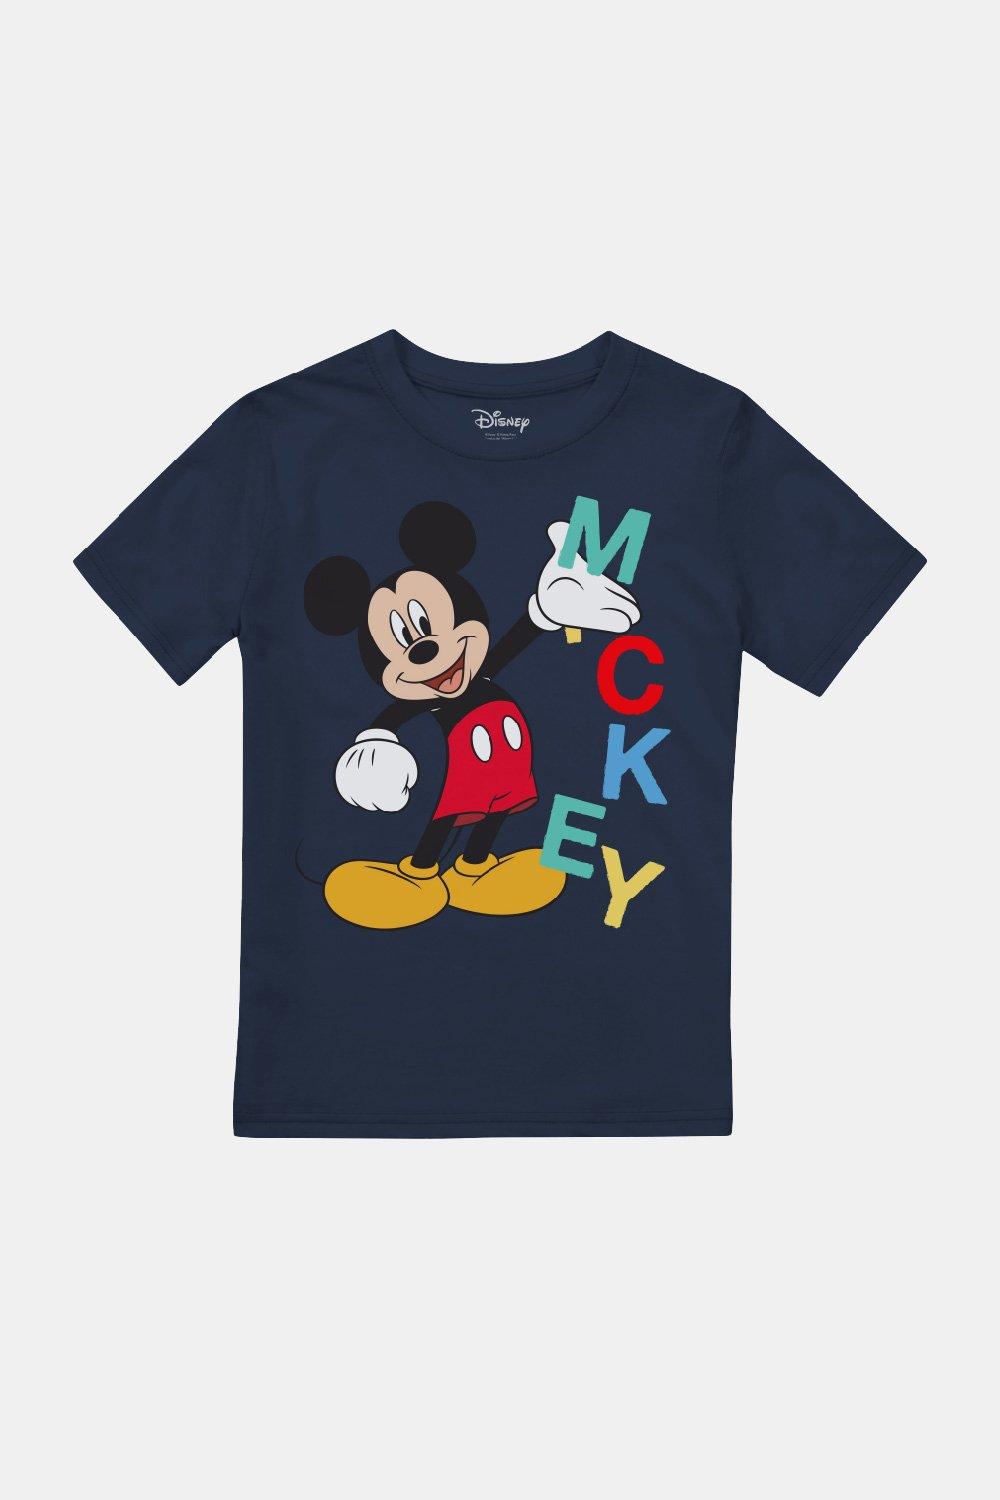 Футболка с надписью «Микки Маус» для мальчиков Disney, синий детский конструктор hello kitty микки и минни маус